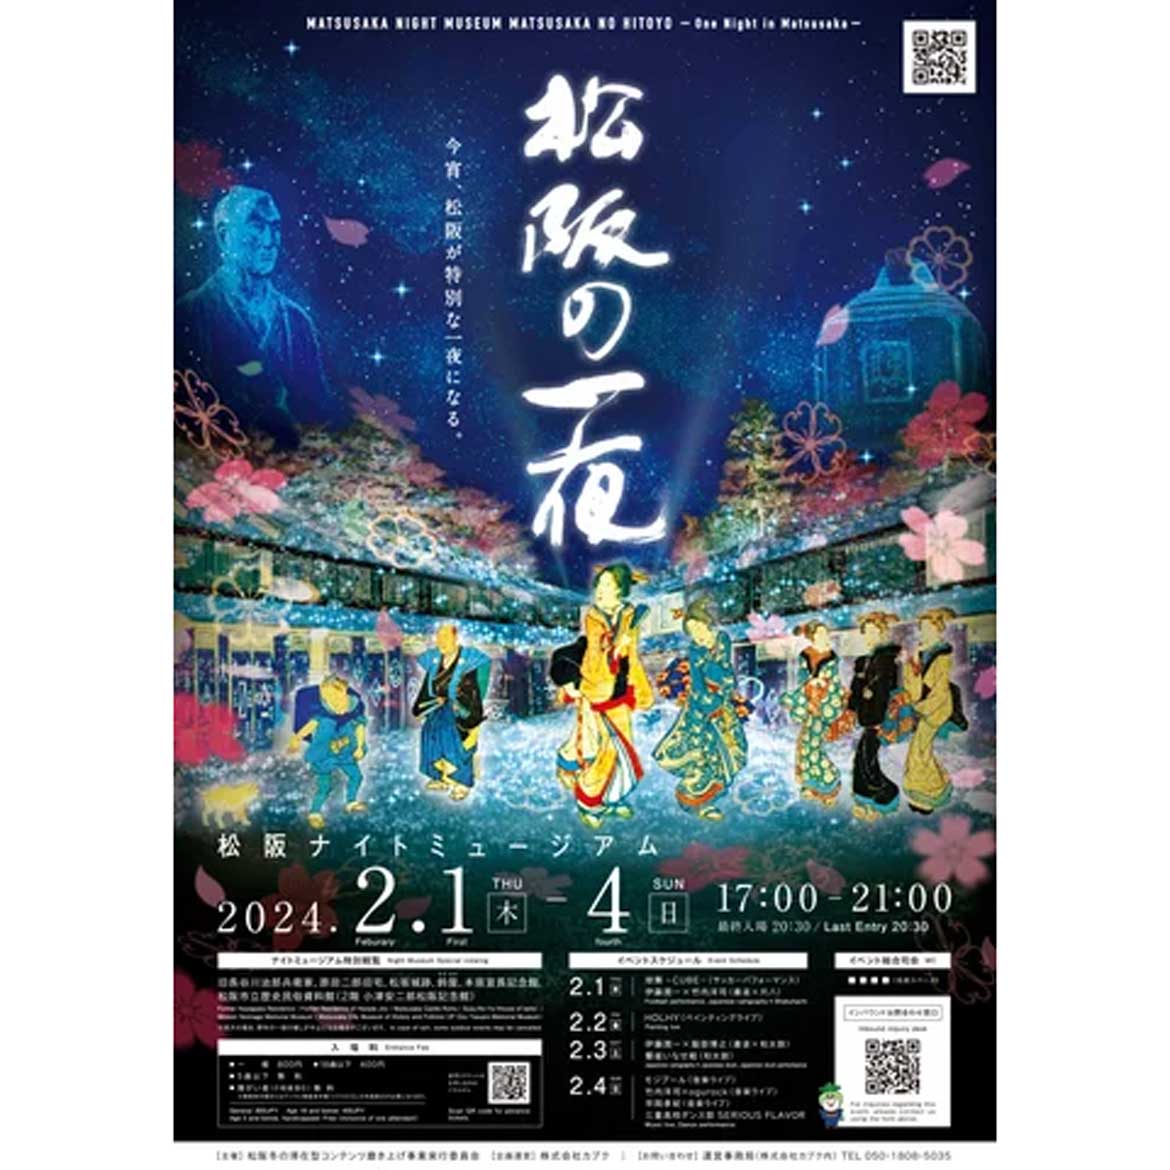 夜の街を彩るナイトミュージアム「松阪の一夜（ひとよ）」三重県松阪市にて開催